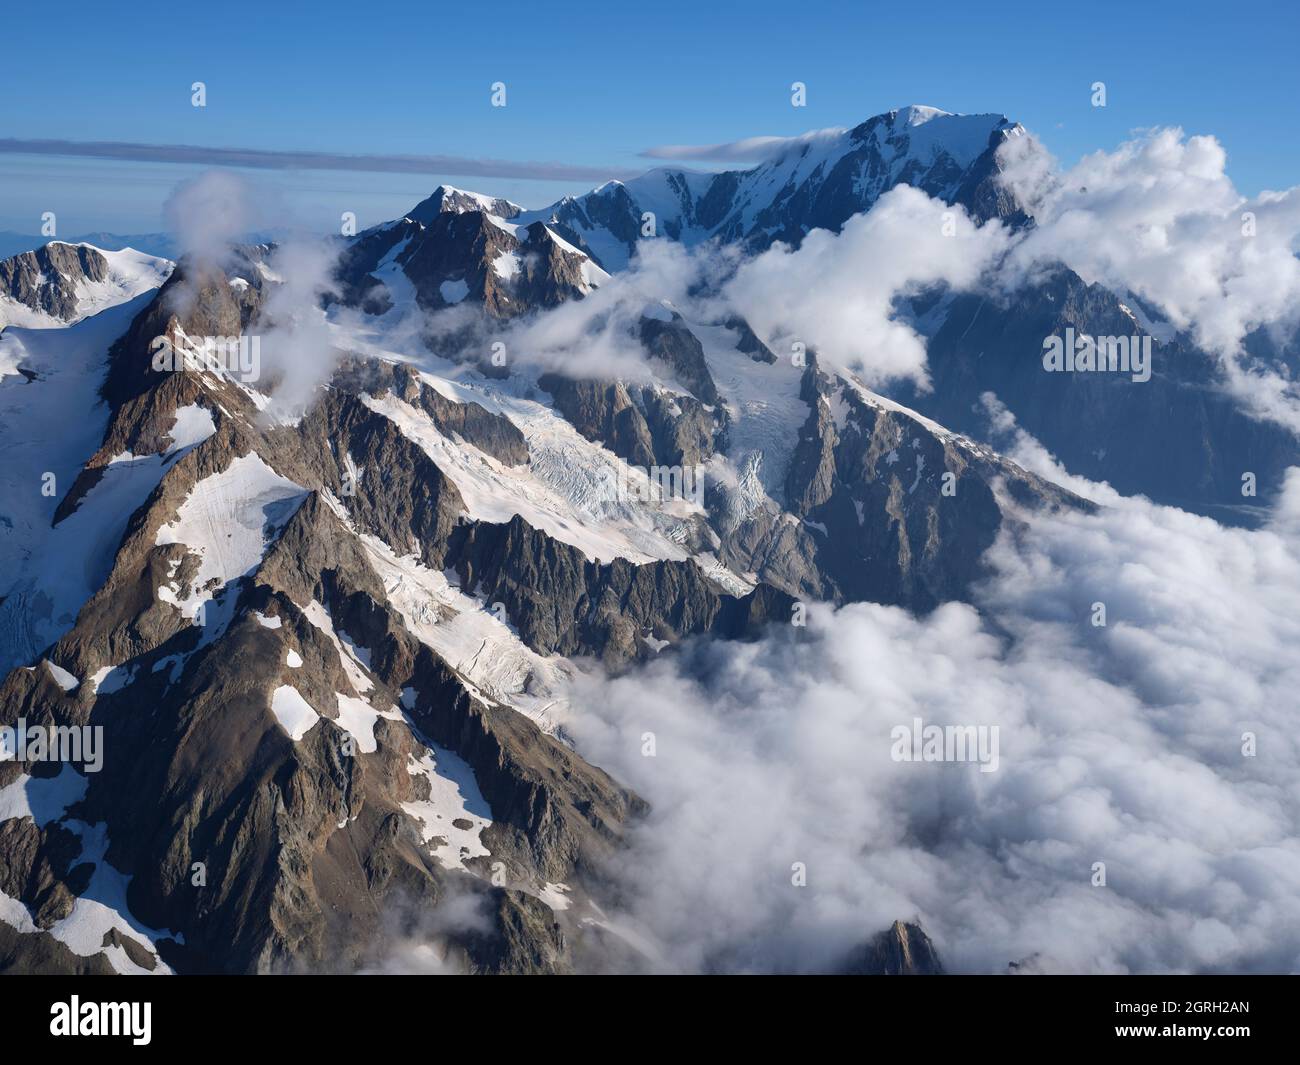 VISTA AÉREA. Aiguille des Glaciers, Aiguille de Trè la Tête y Mont Blanc (en la distancia). Val Veni, Courmayeur, Valle de Aosta, Italia. Foto de stock